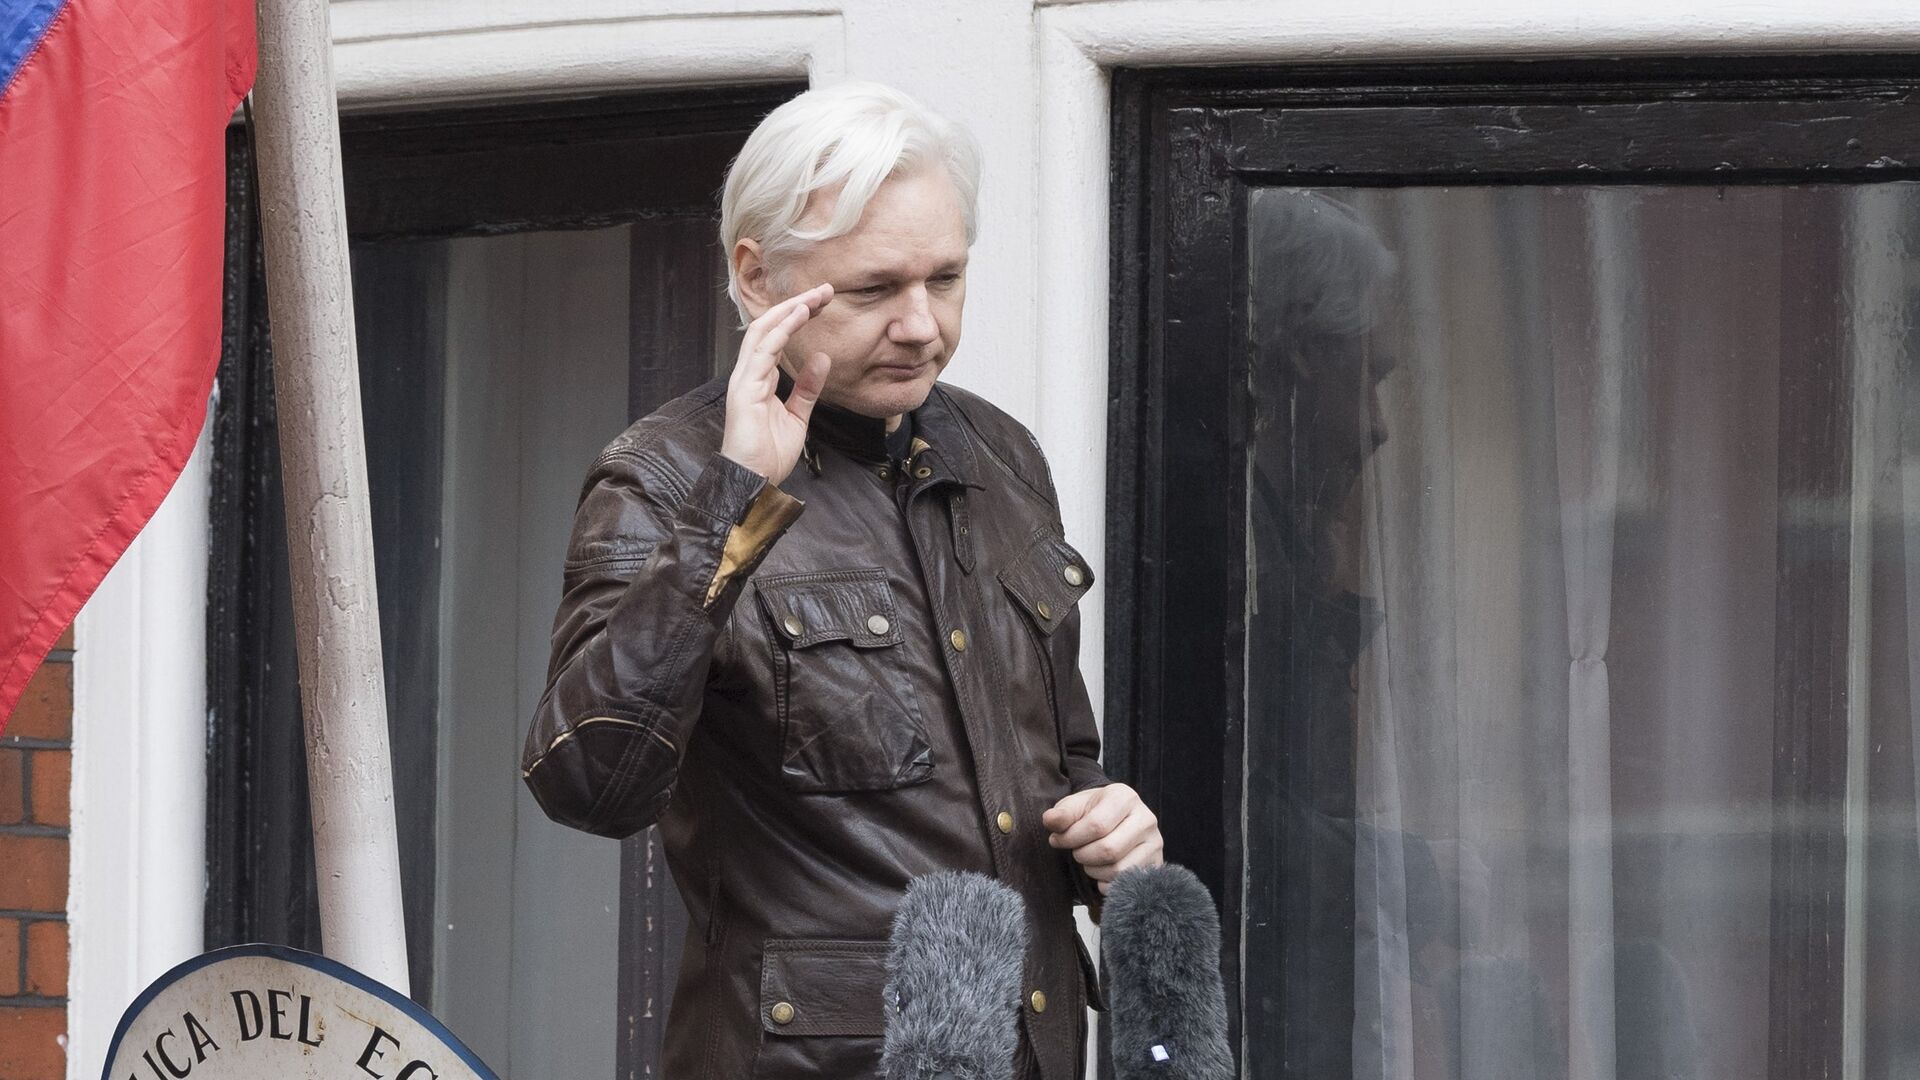 Находящийся в лондонской тюрьме основатель WikiLeaks Джулиан Ассанж начал испытывать проблемы со здоровьем